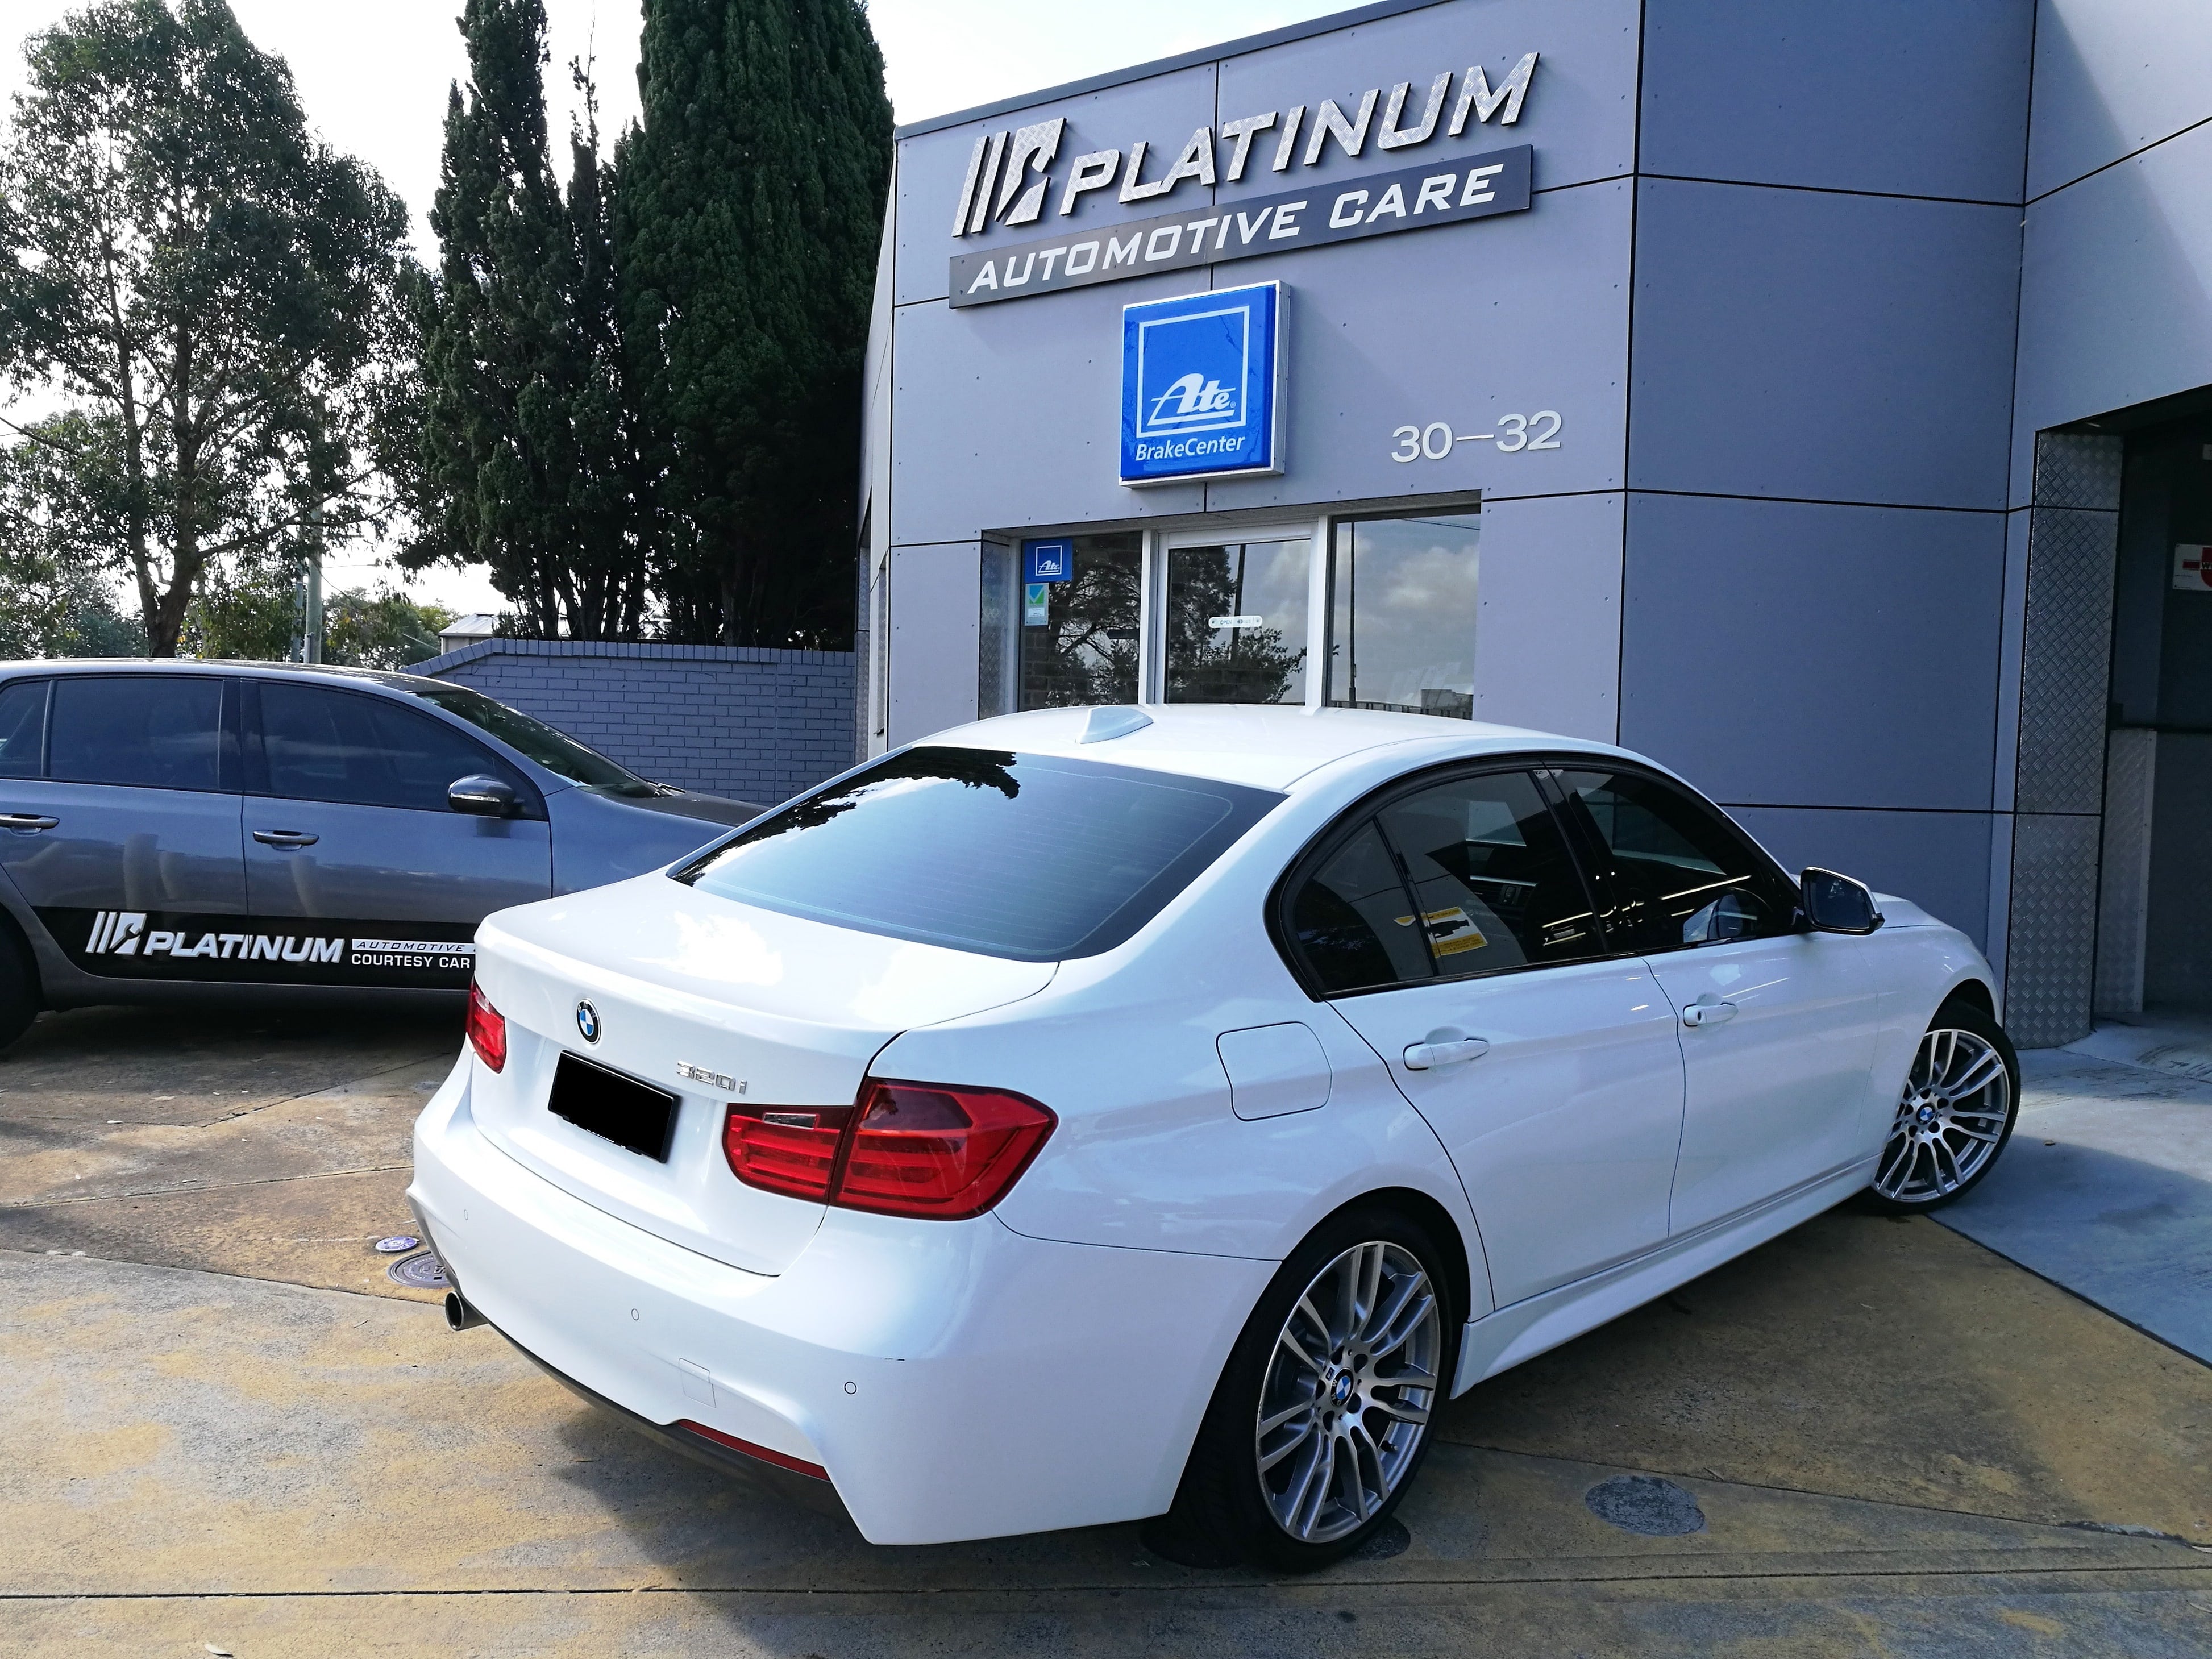 White BMW Rear View